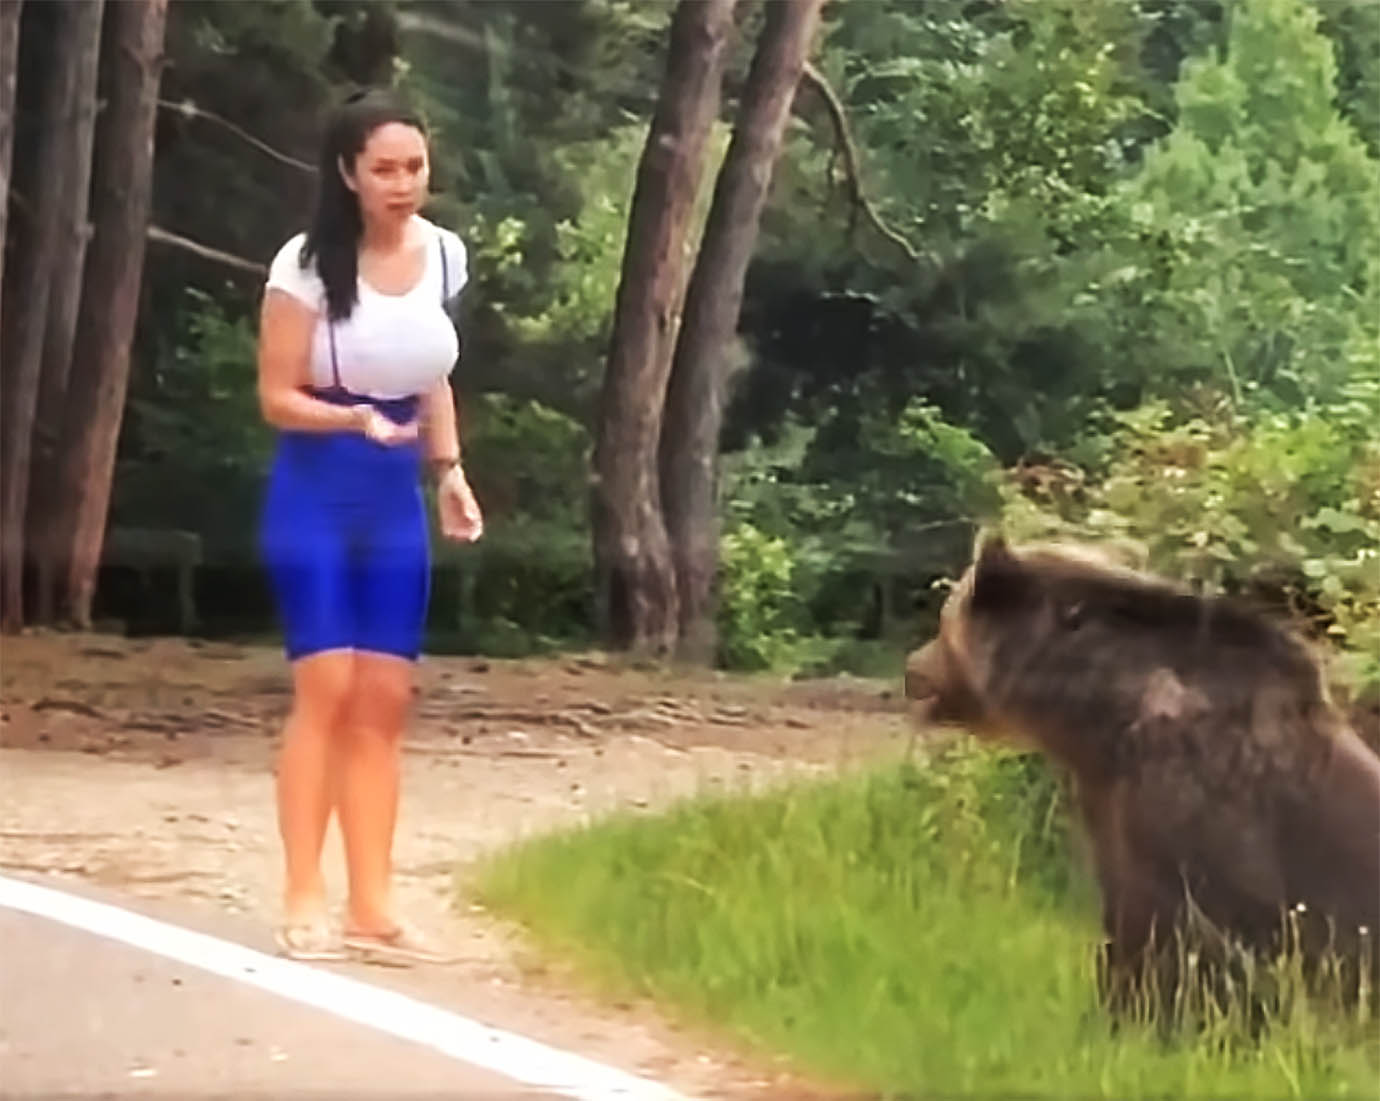 【衝撃動画】野生クマの真横で記念撮影しようとした女性の末路 / 超接近して熊激怒 → 襲われる